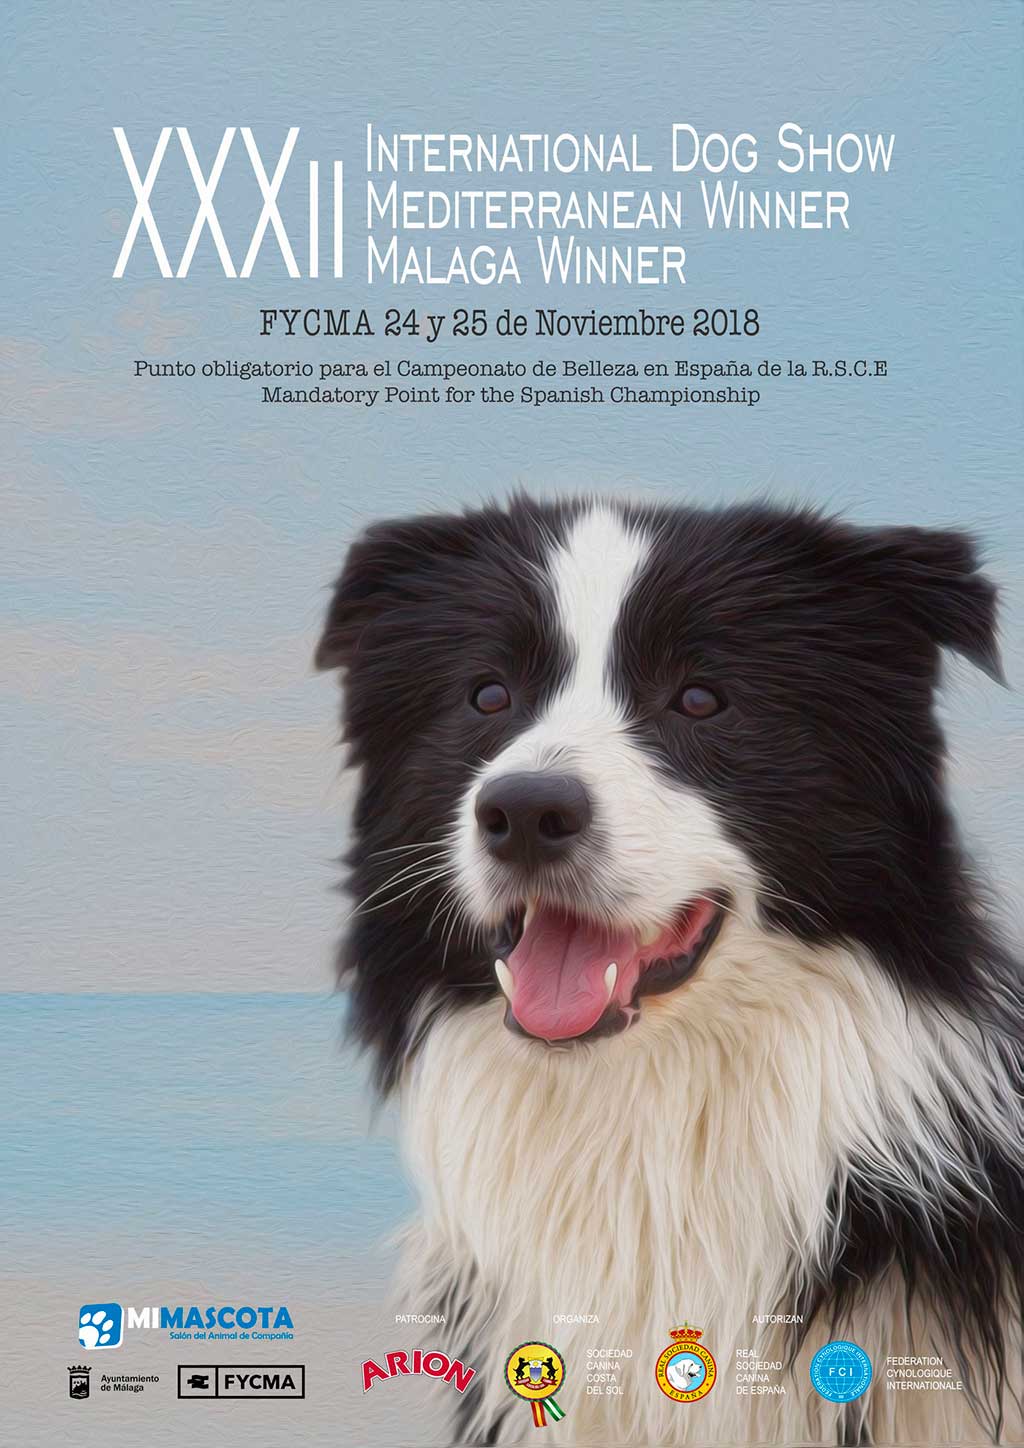 El fin de semana del 24 y 25 de Noviembre de 2018, se celebrará en Málaga, España, la Exposición Internacional Canina CAC - CACIB Mediterranean Winner.